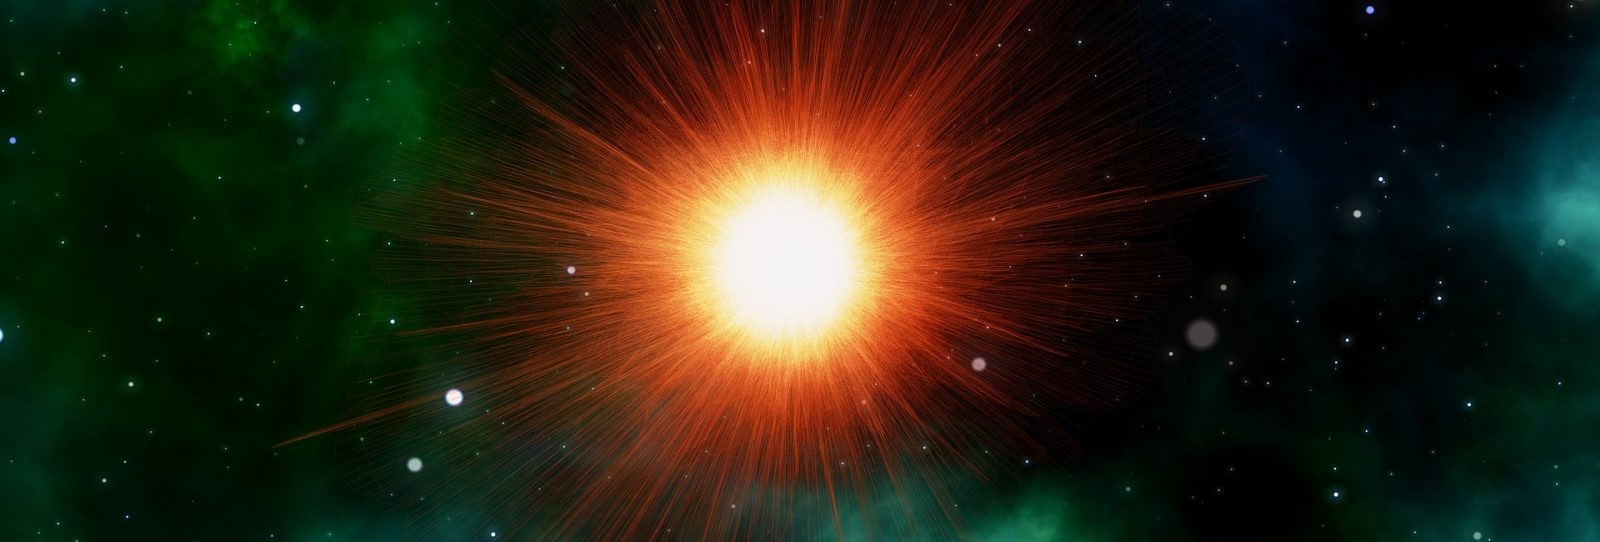 Astronomia się zmienia. Sztuczna inteligencja po raz pierwszy sama odkryła i zweryfikowała supernową, zanim ktokolwiek ją zobaczył